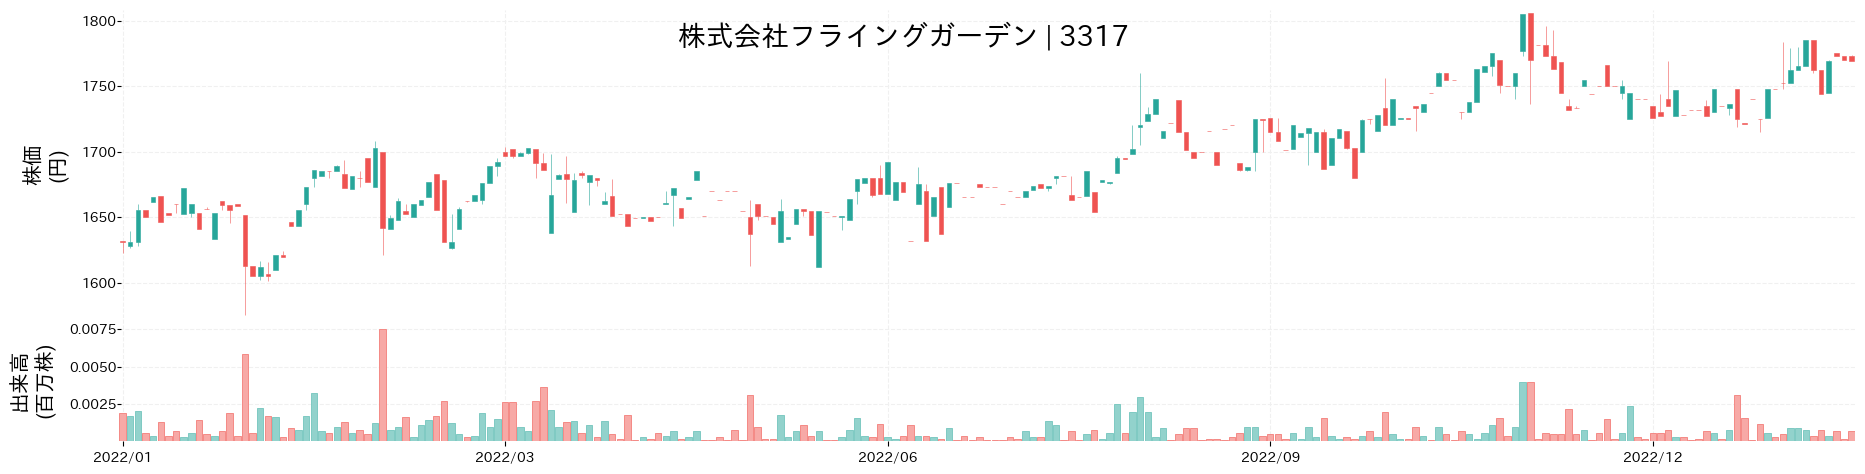 フライングガーデンの株価推移(2022)